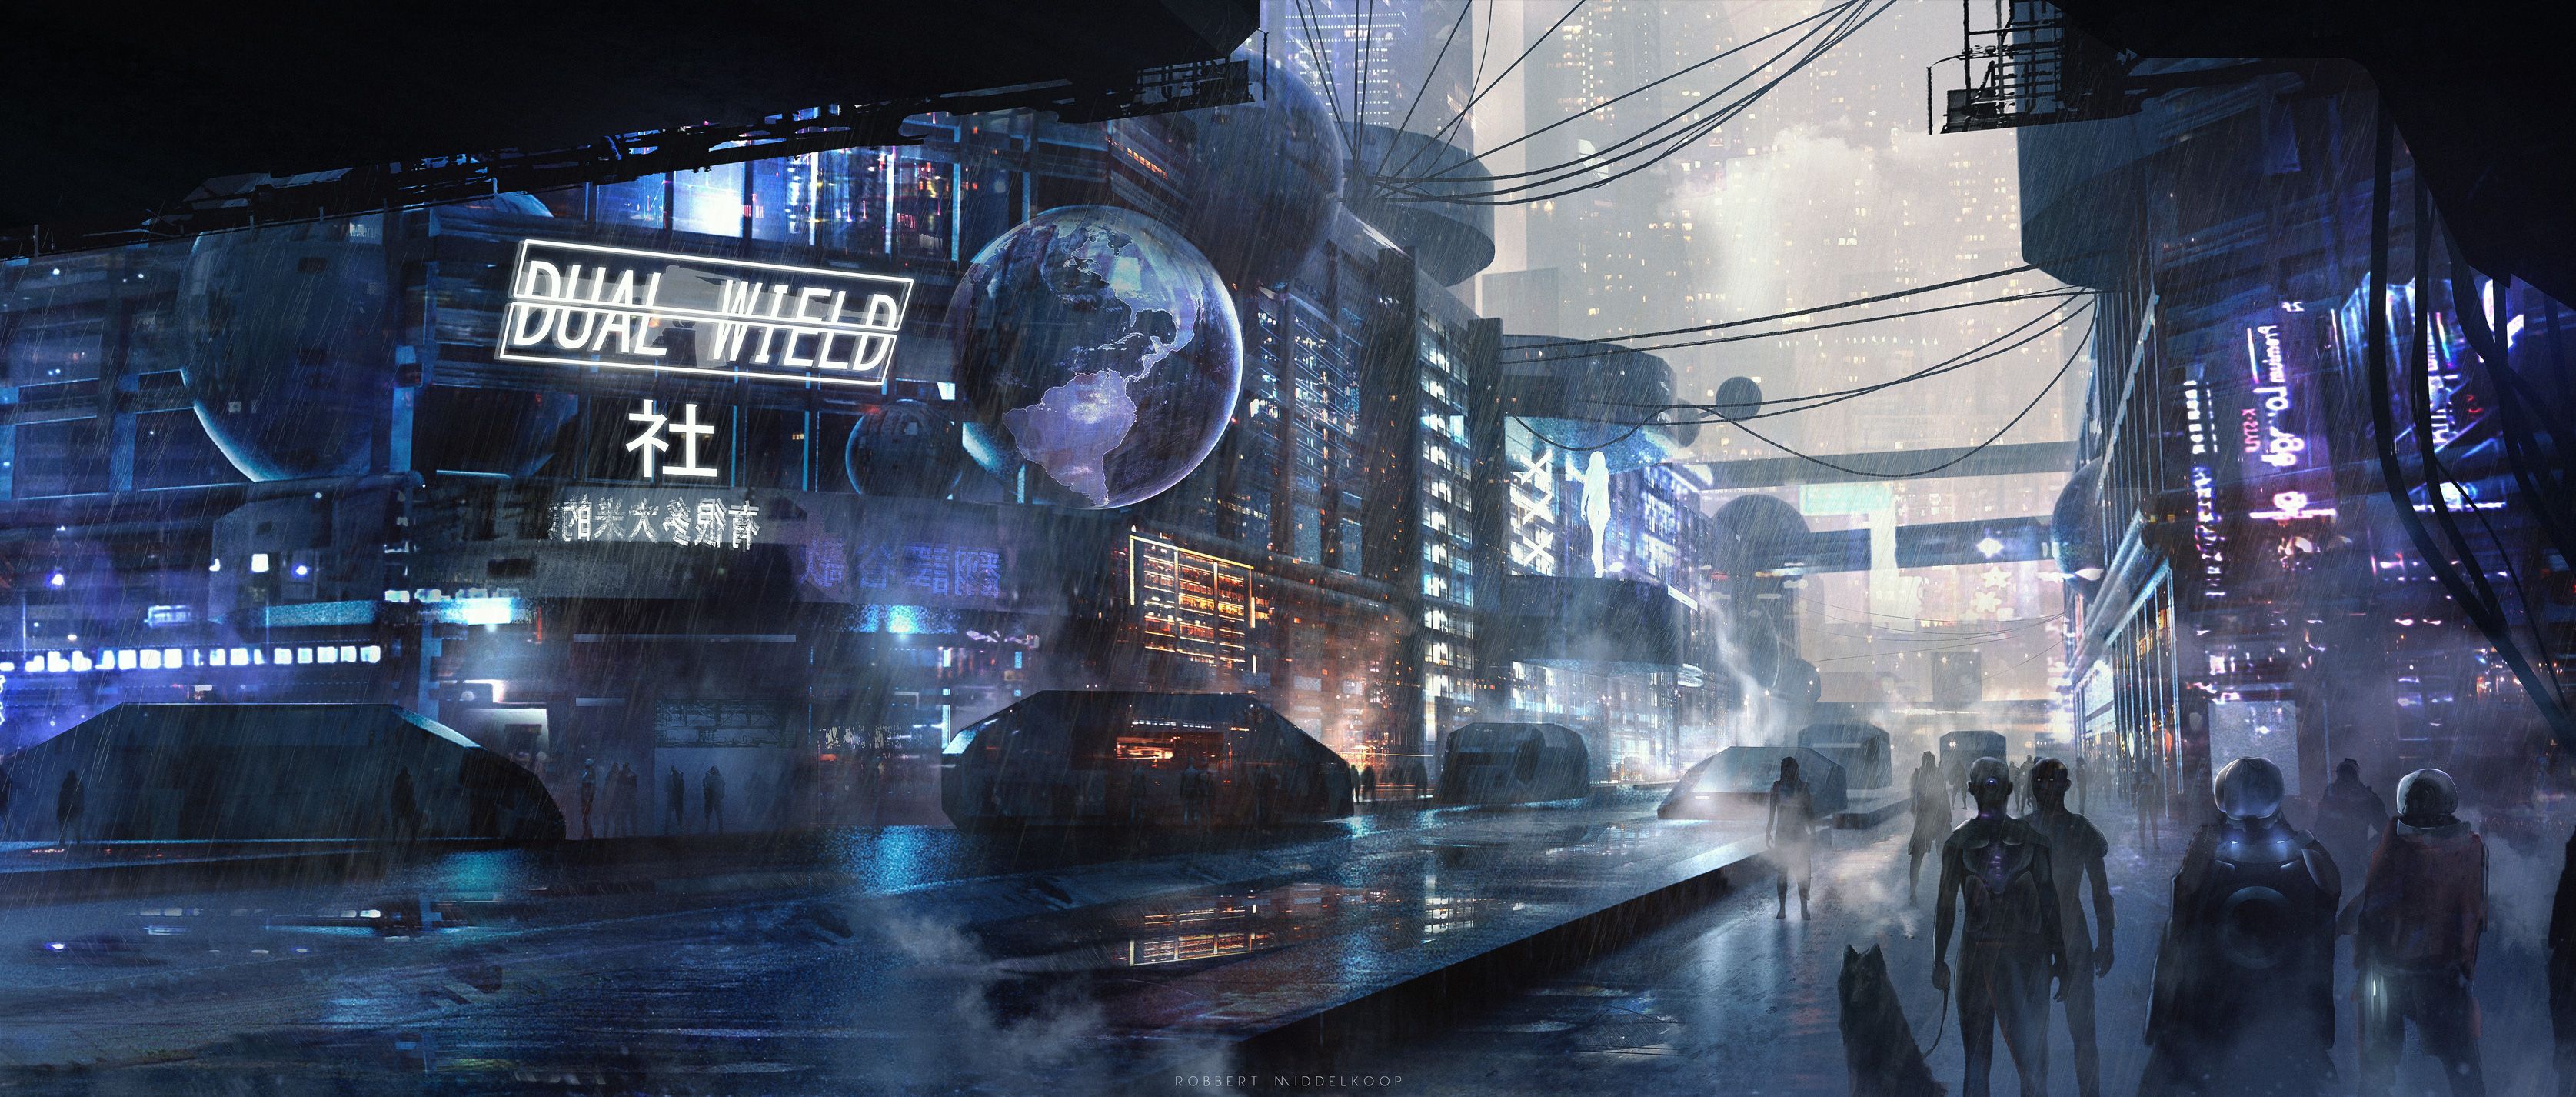 Scifi City Futuristic, HD Artist, 4k Wallpaper, Image